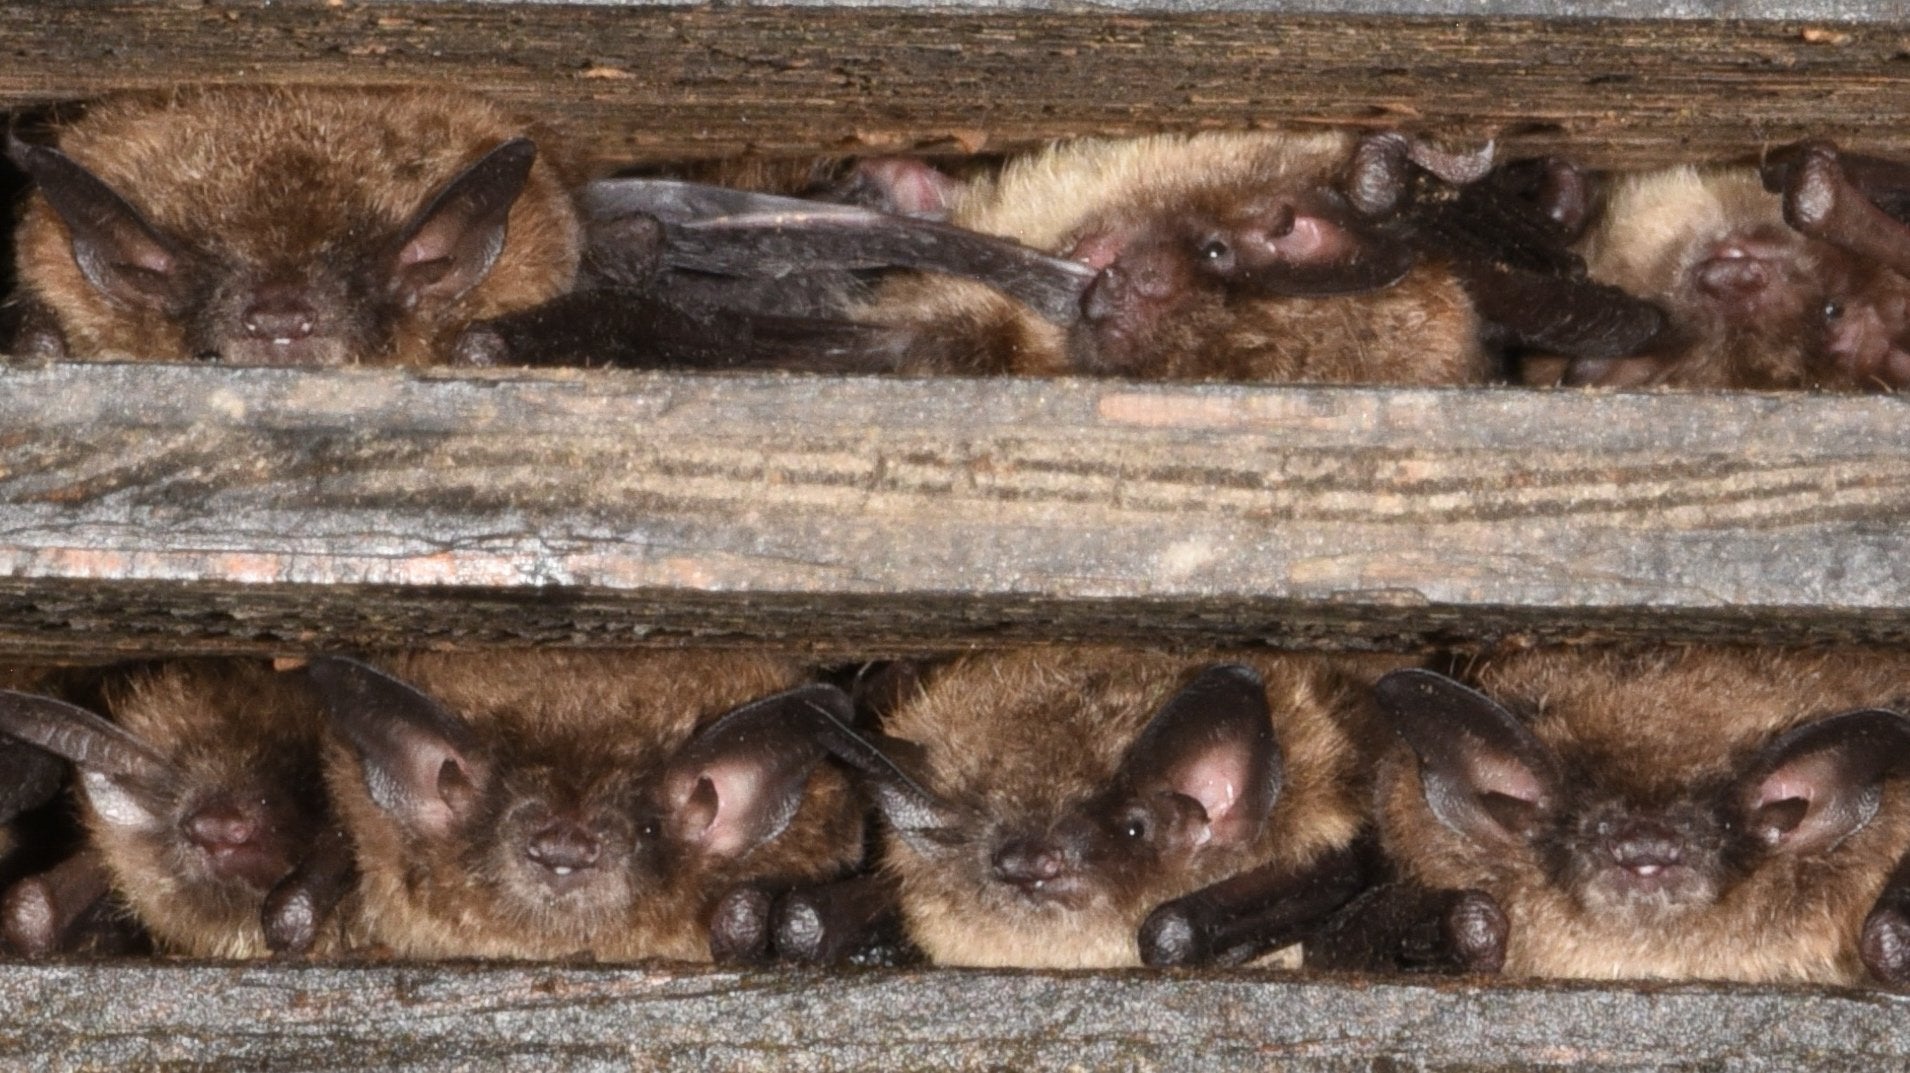 Bat Conservation and Management, Inc.